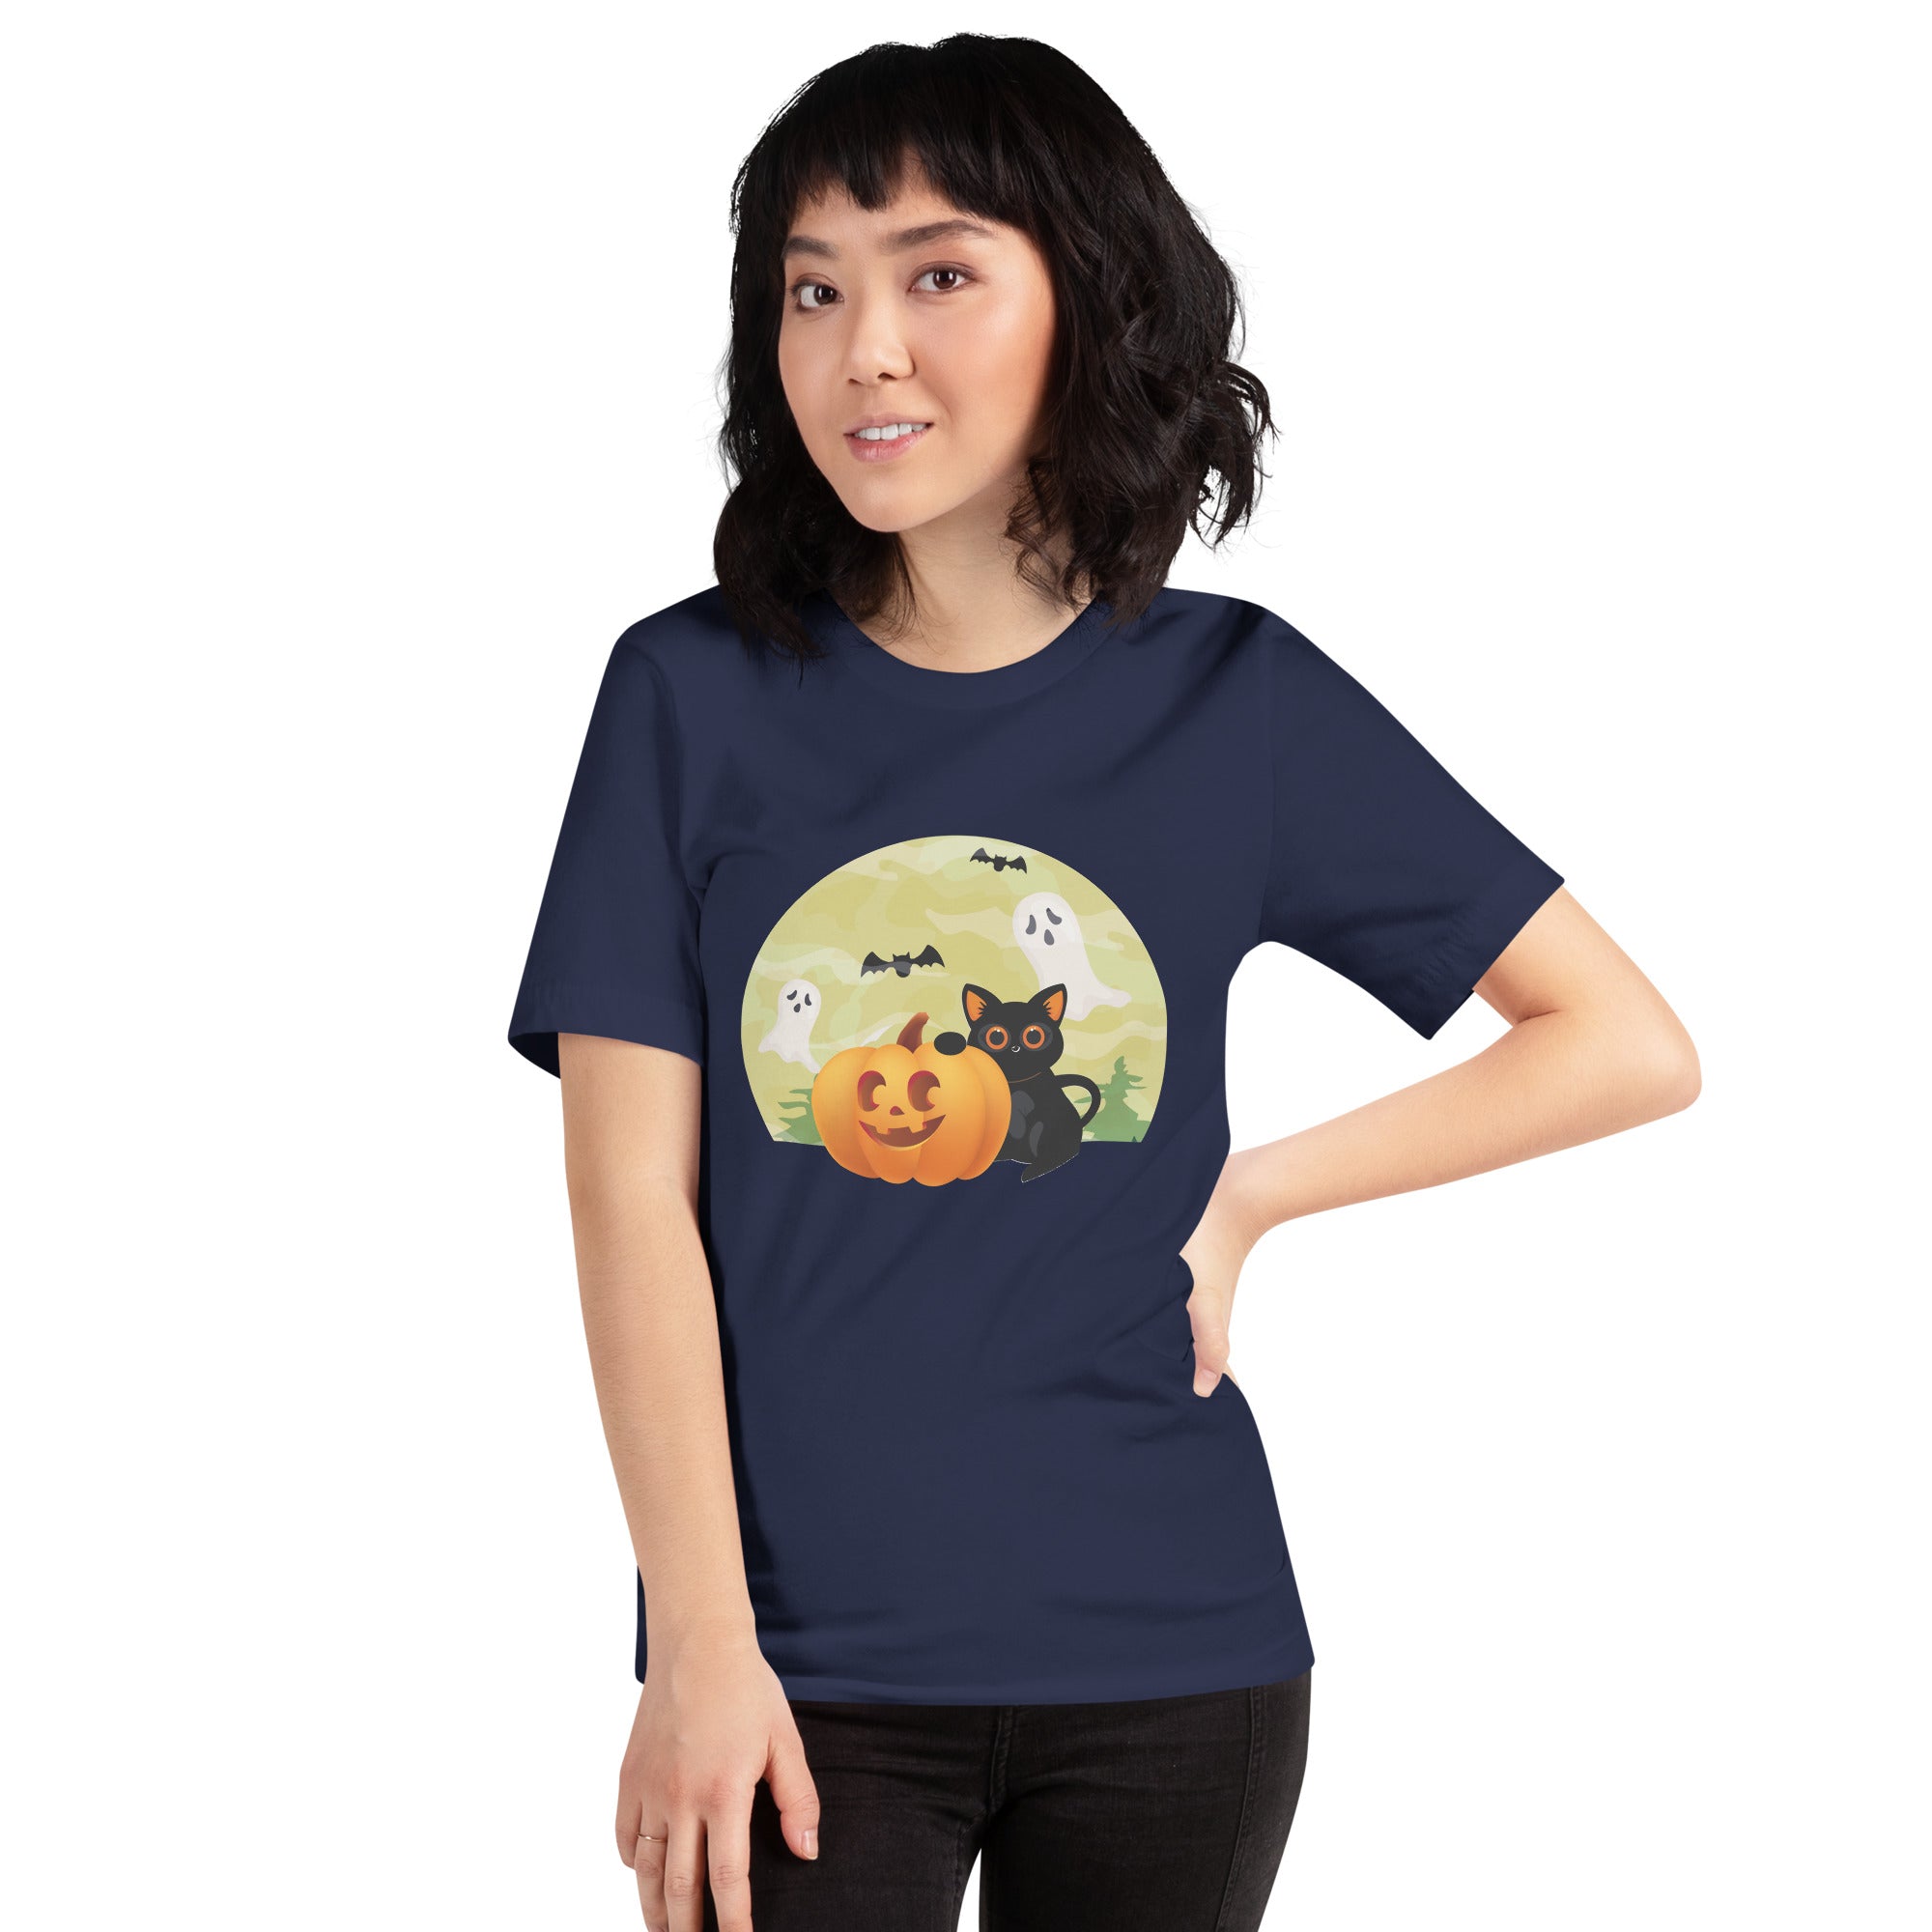 Halloween Black Cat Women's T-Shirt